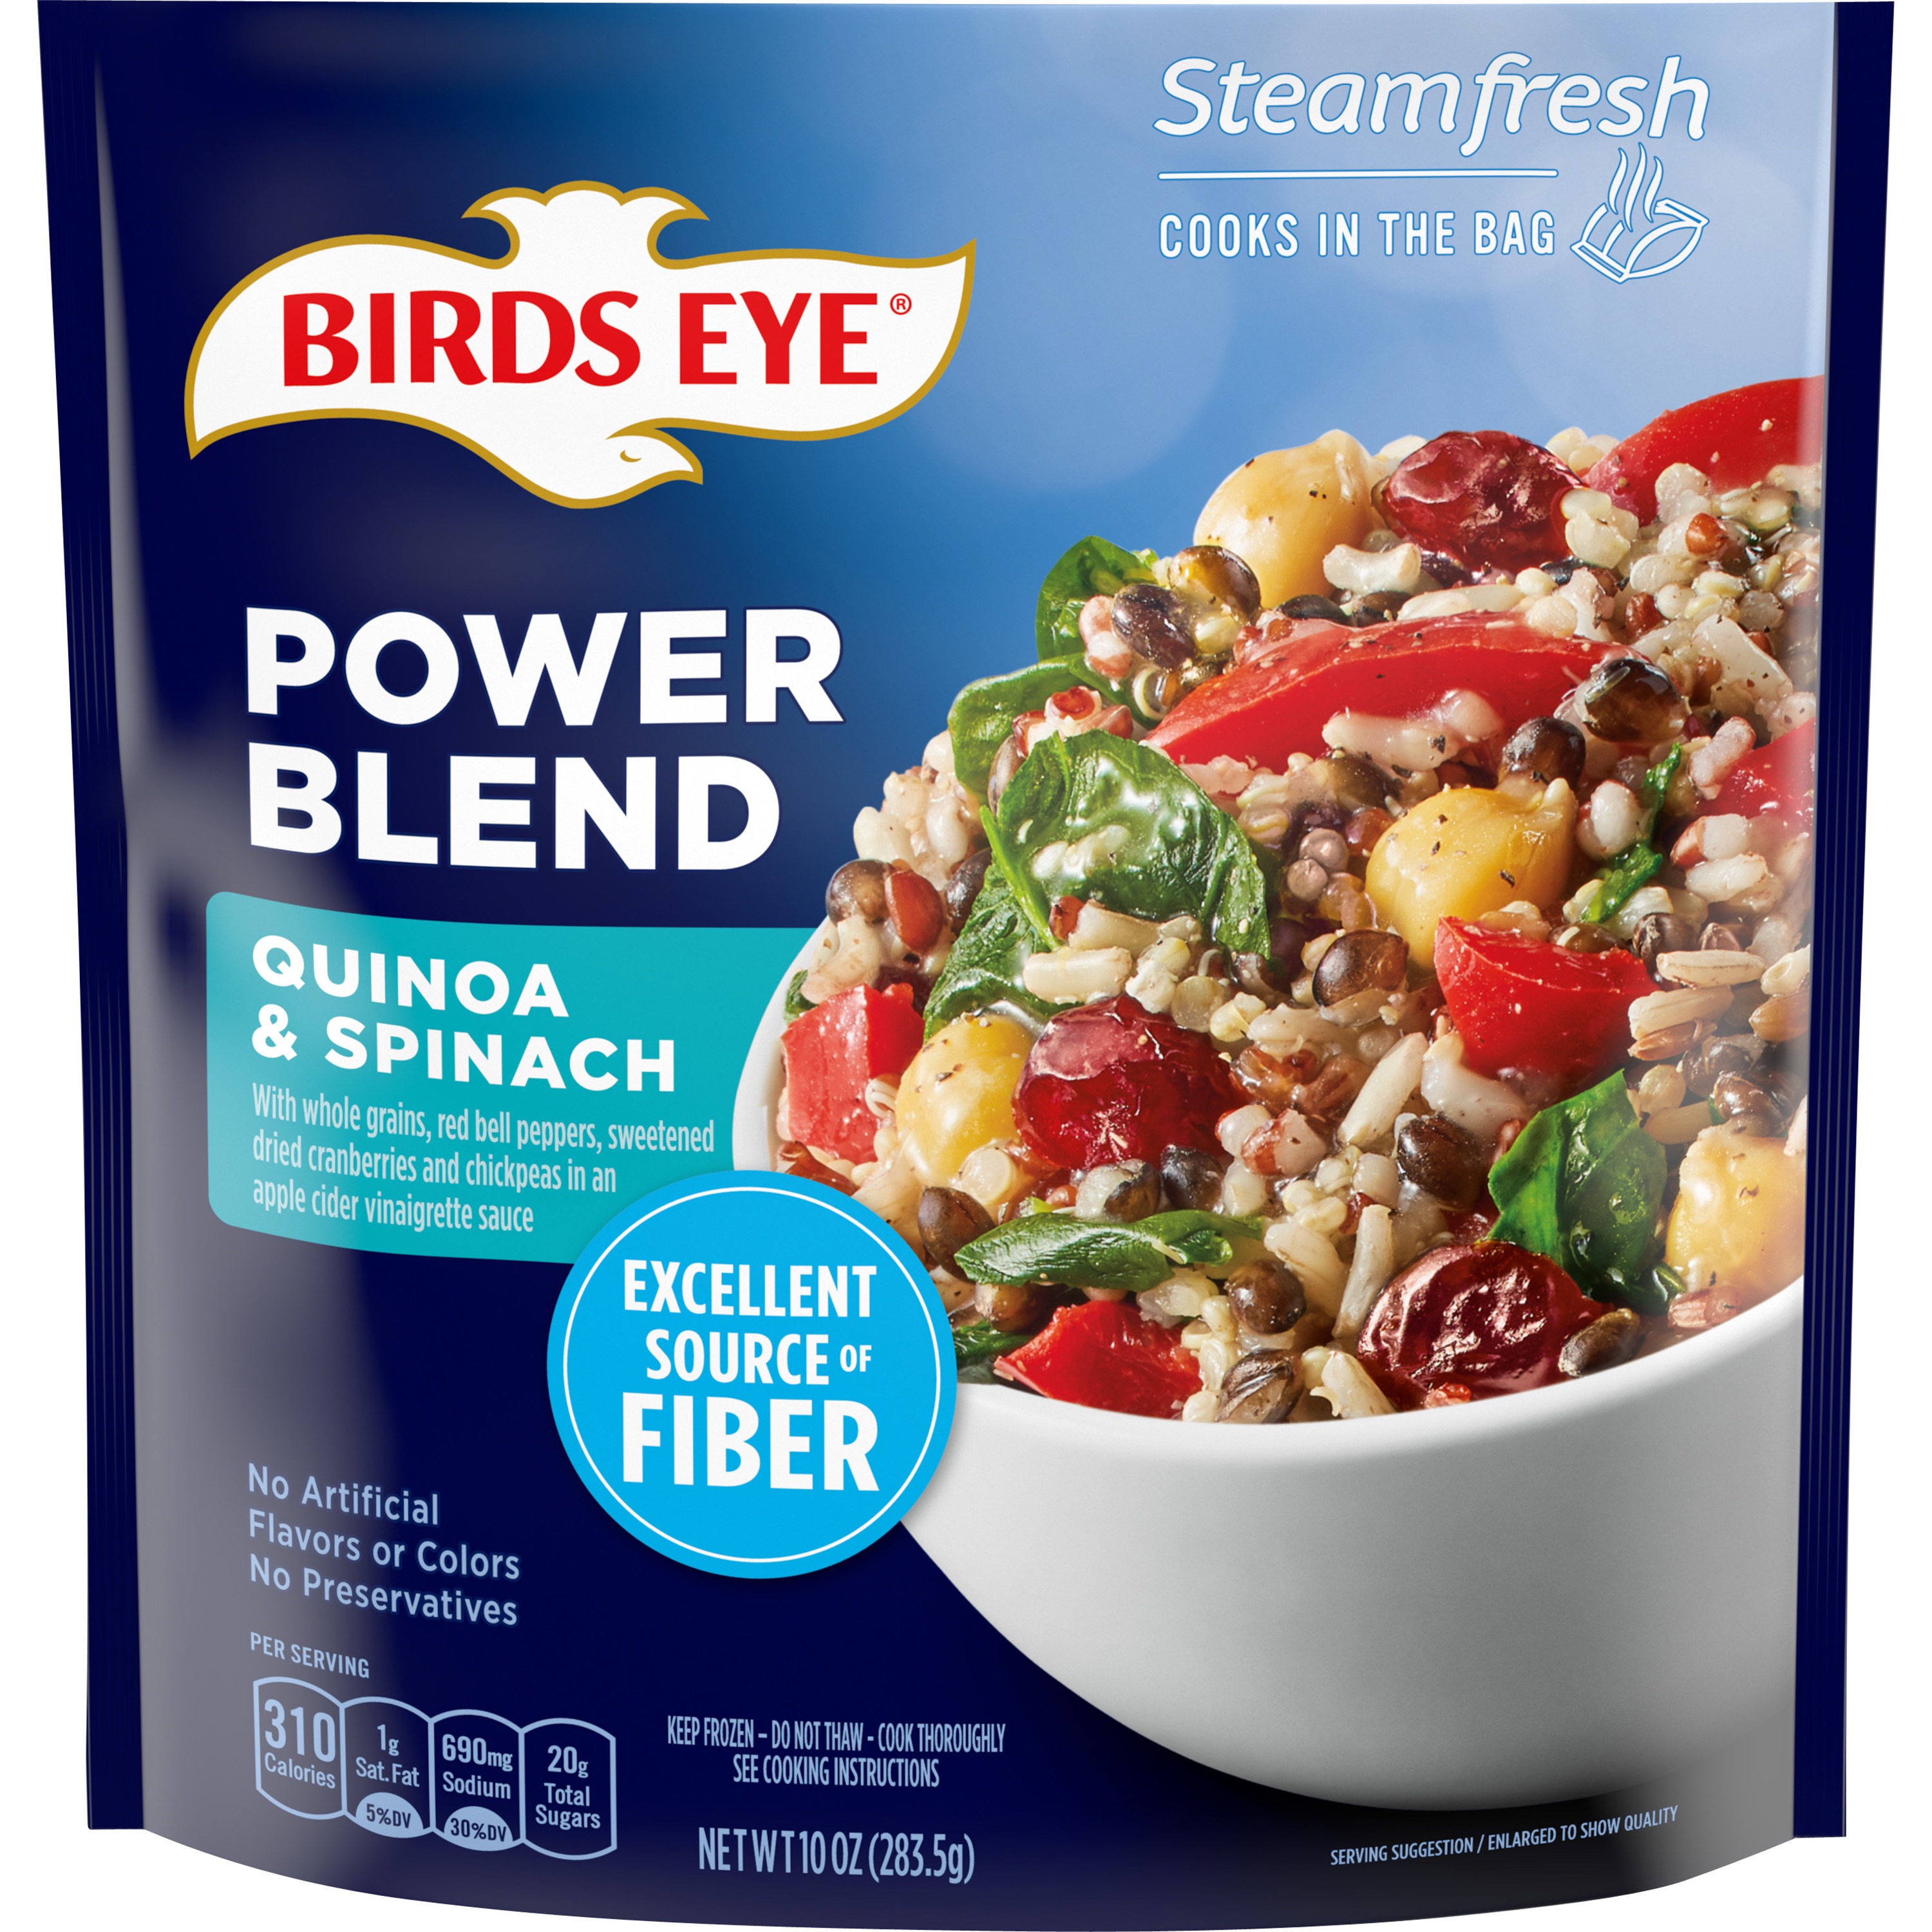 Birds Eye Steamfresh Superfood Blends Quinoa & Spinach